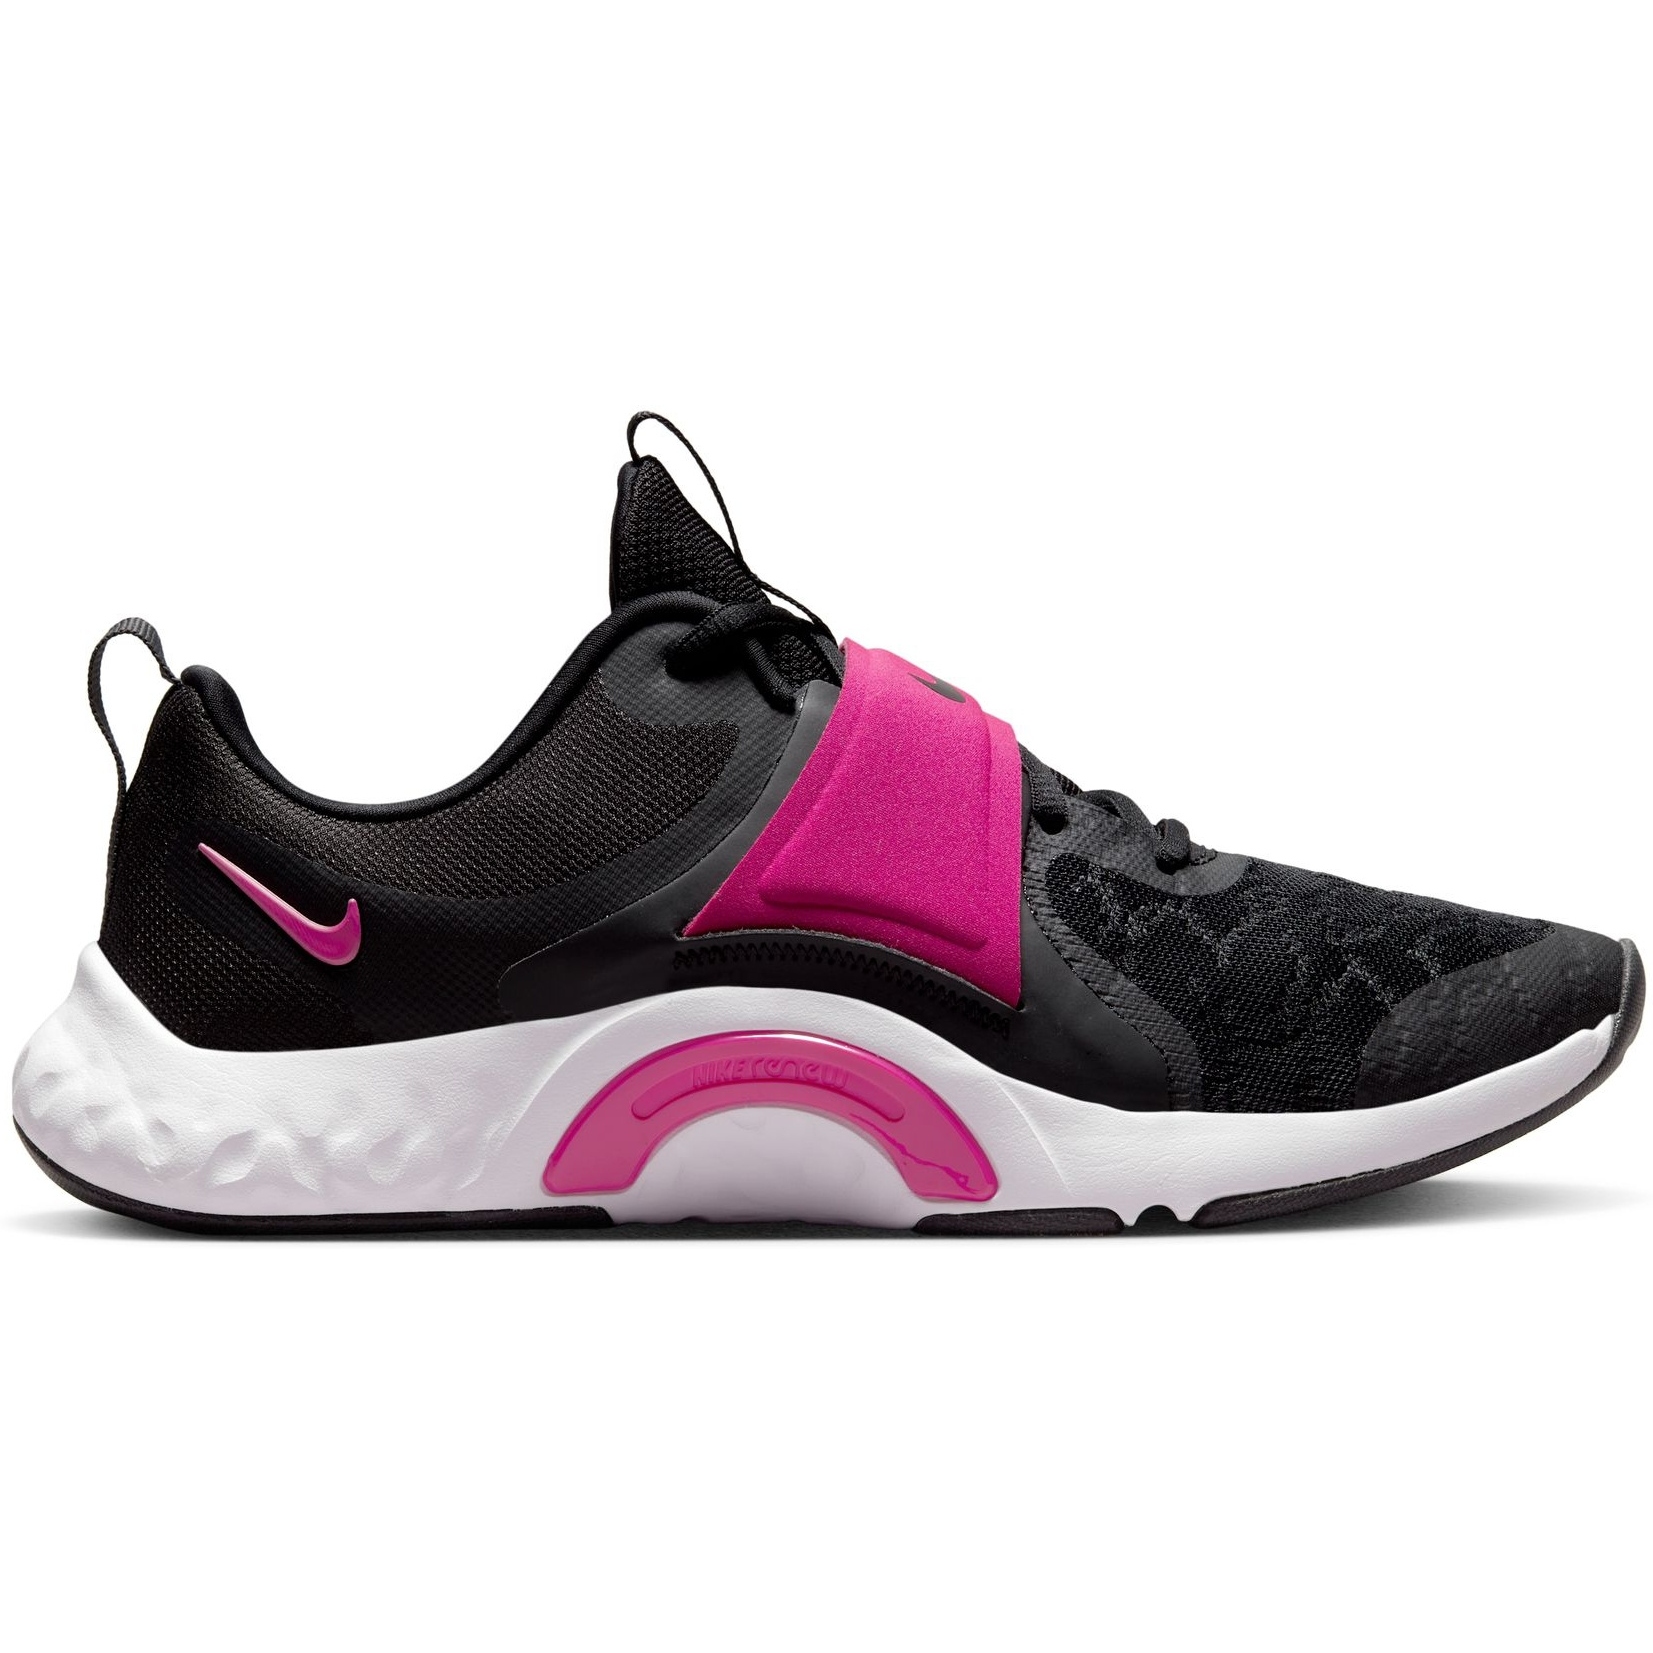 Produktbild von Nike Renew In-Season TR 12 Damen Fitnessschuh - black/active pink-dark smoke grey-white DD9301-003